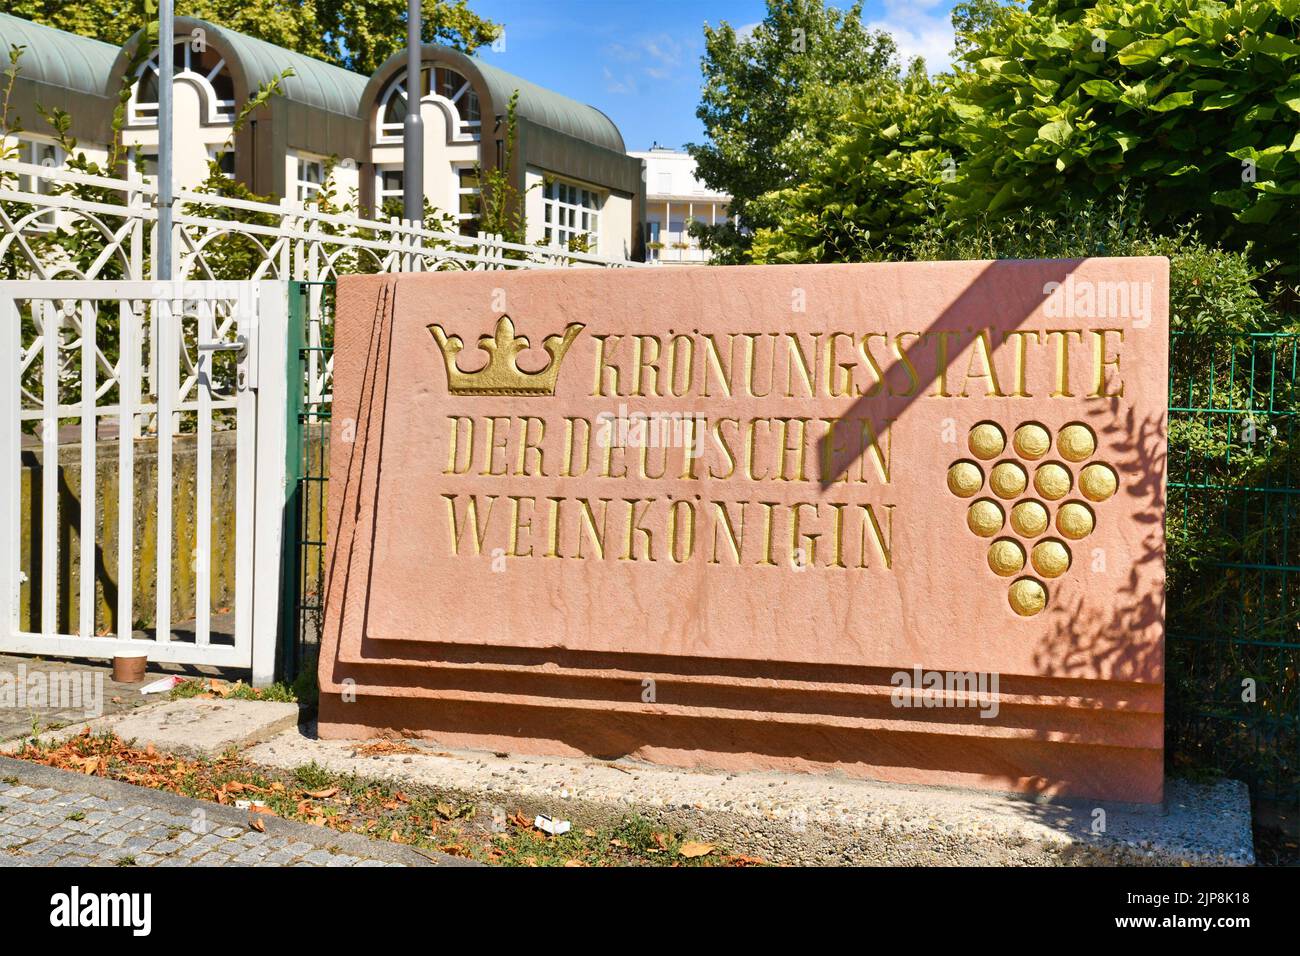 Neustadt an der Weinstraße, Deutschland - August 2022: Schild mit der Aufschrift "Krönungsstadt der deutschen Weinkönigin", einem Vertreter der deutschen Weinindustrie Stockfoto